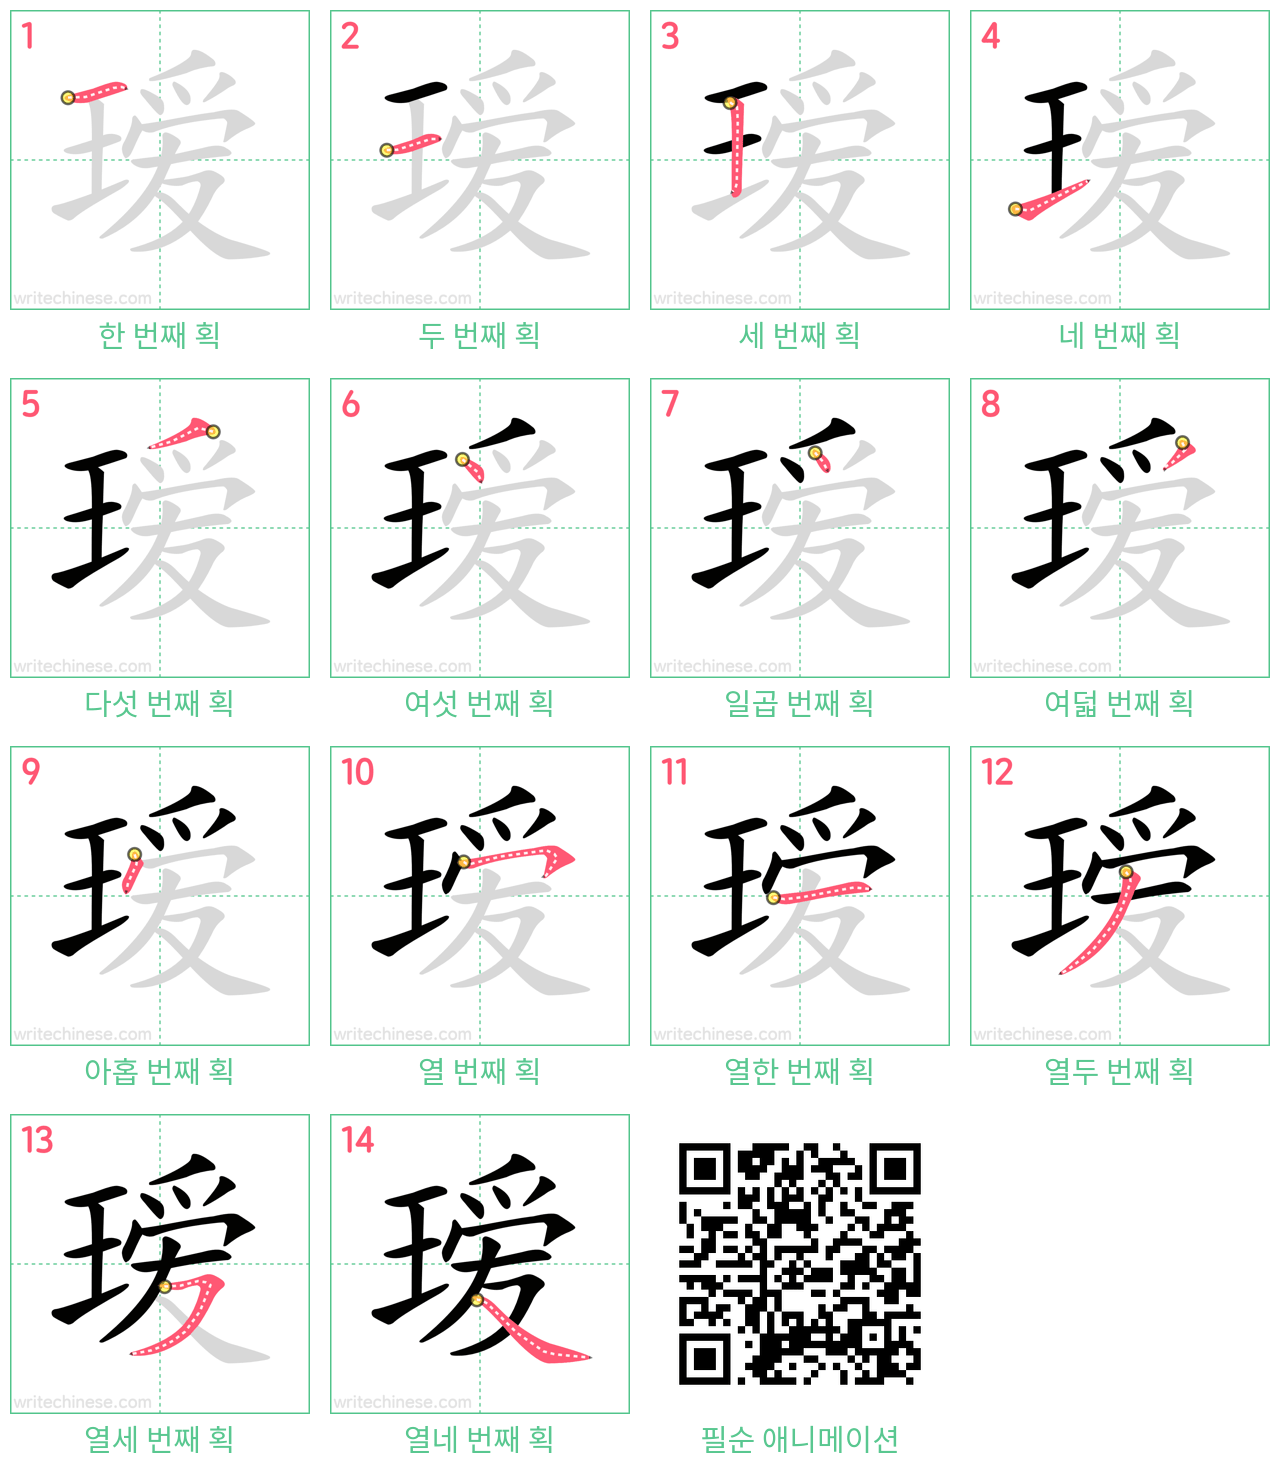 瑷 step-by-step stroke order diagrams